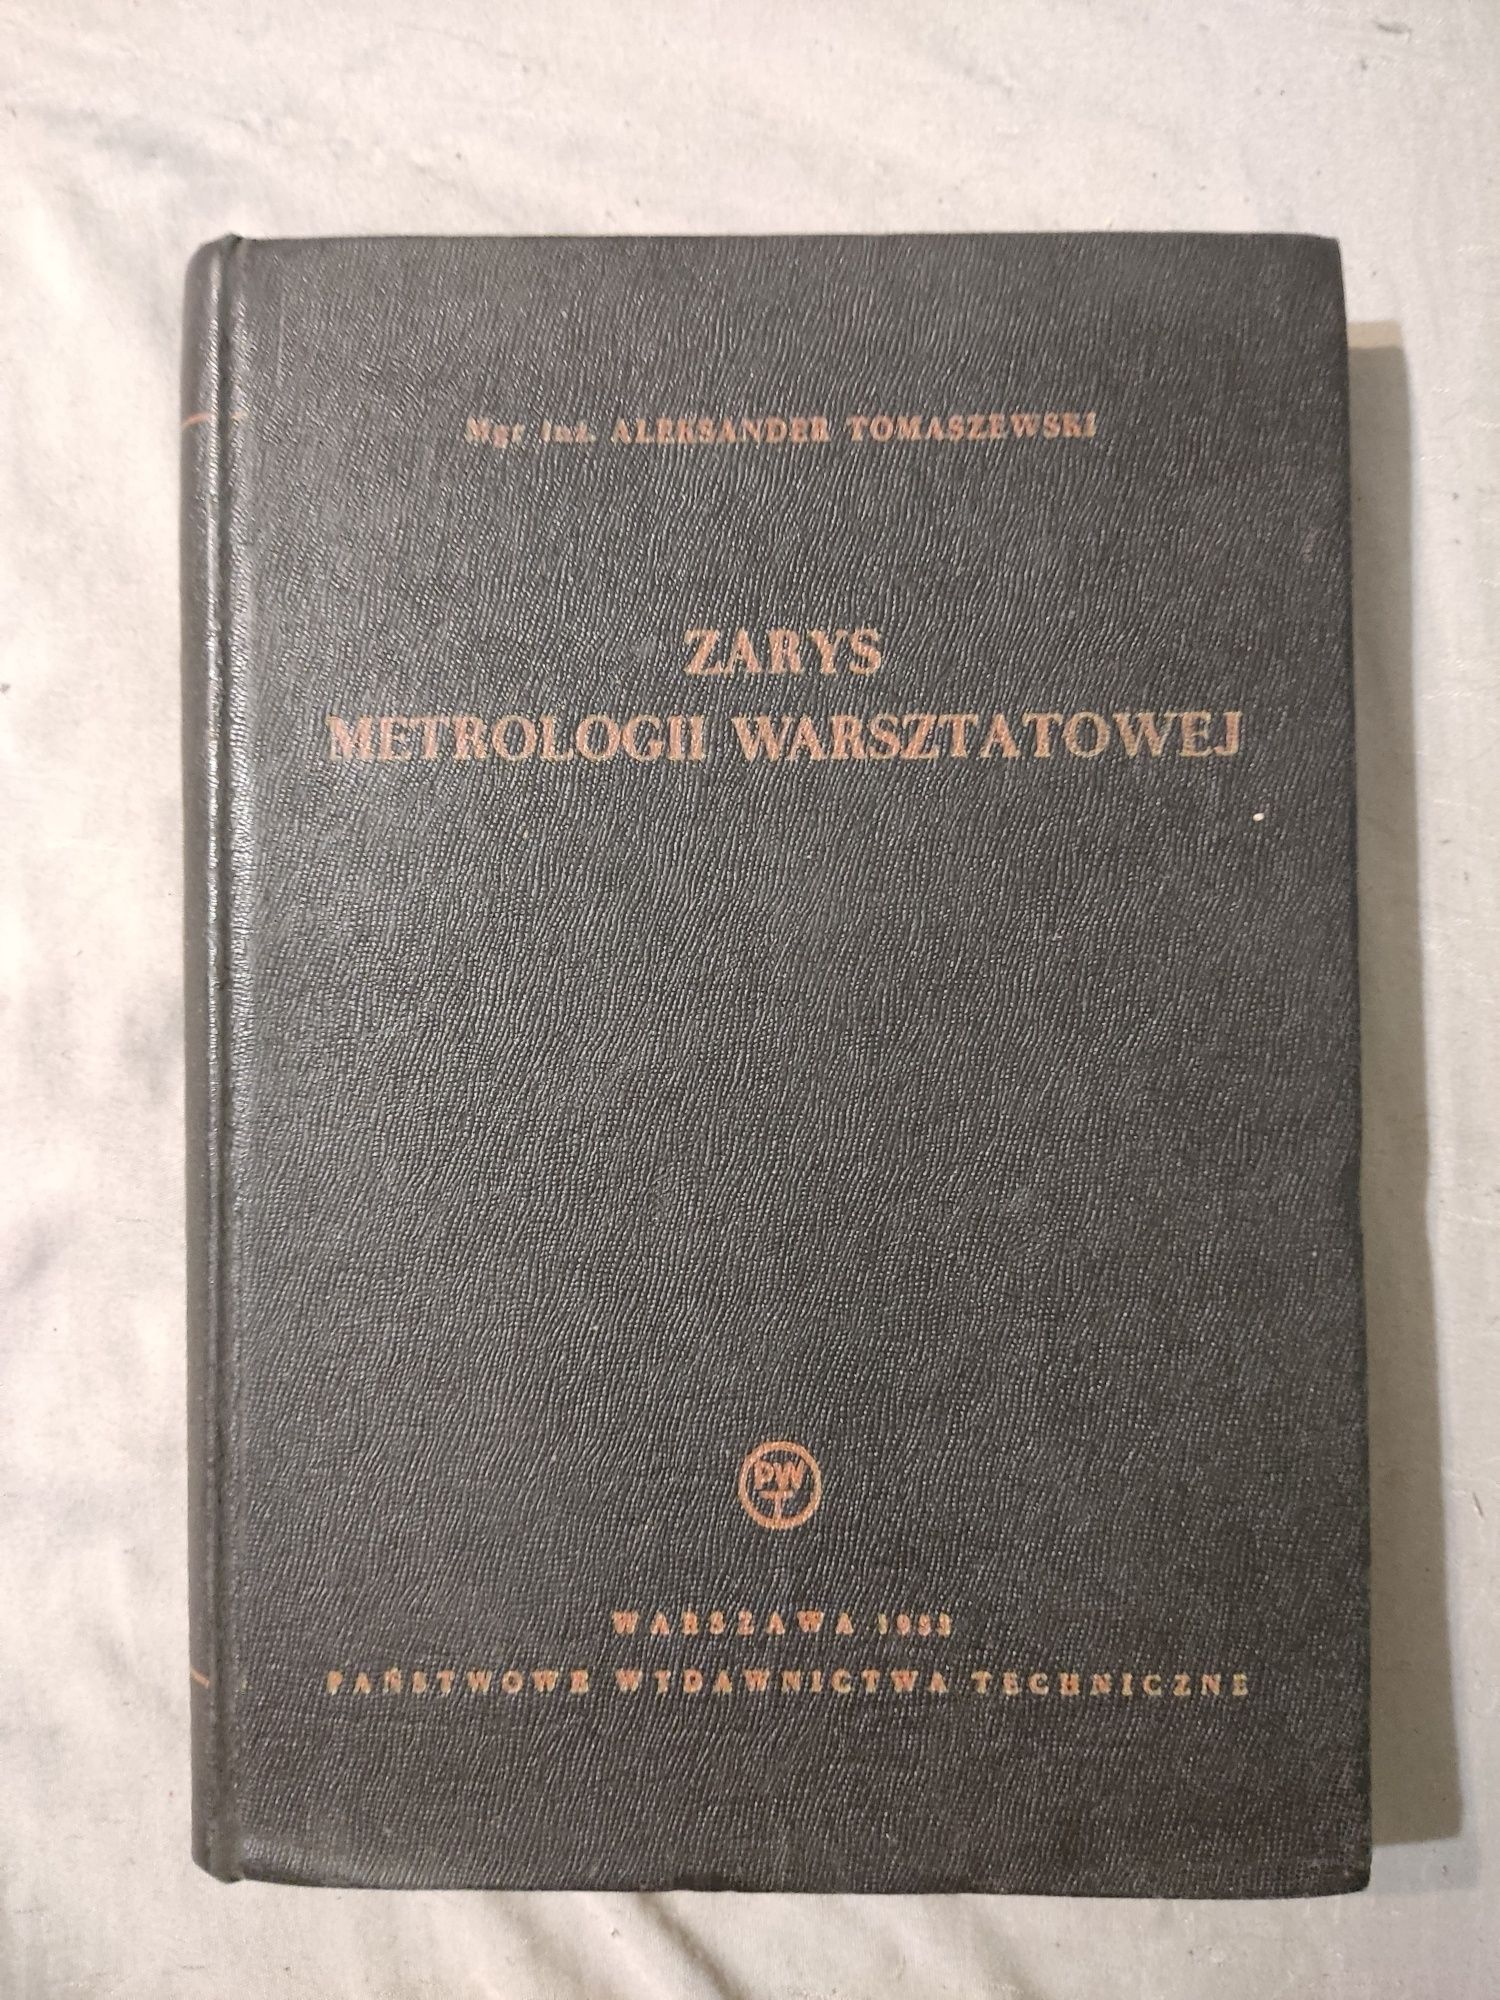 Zarys Metrologii Warsztatowej - A. Tomaszewski